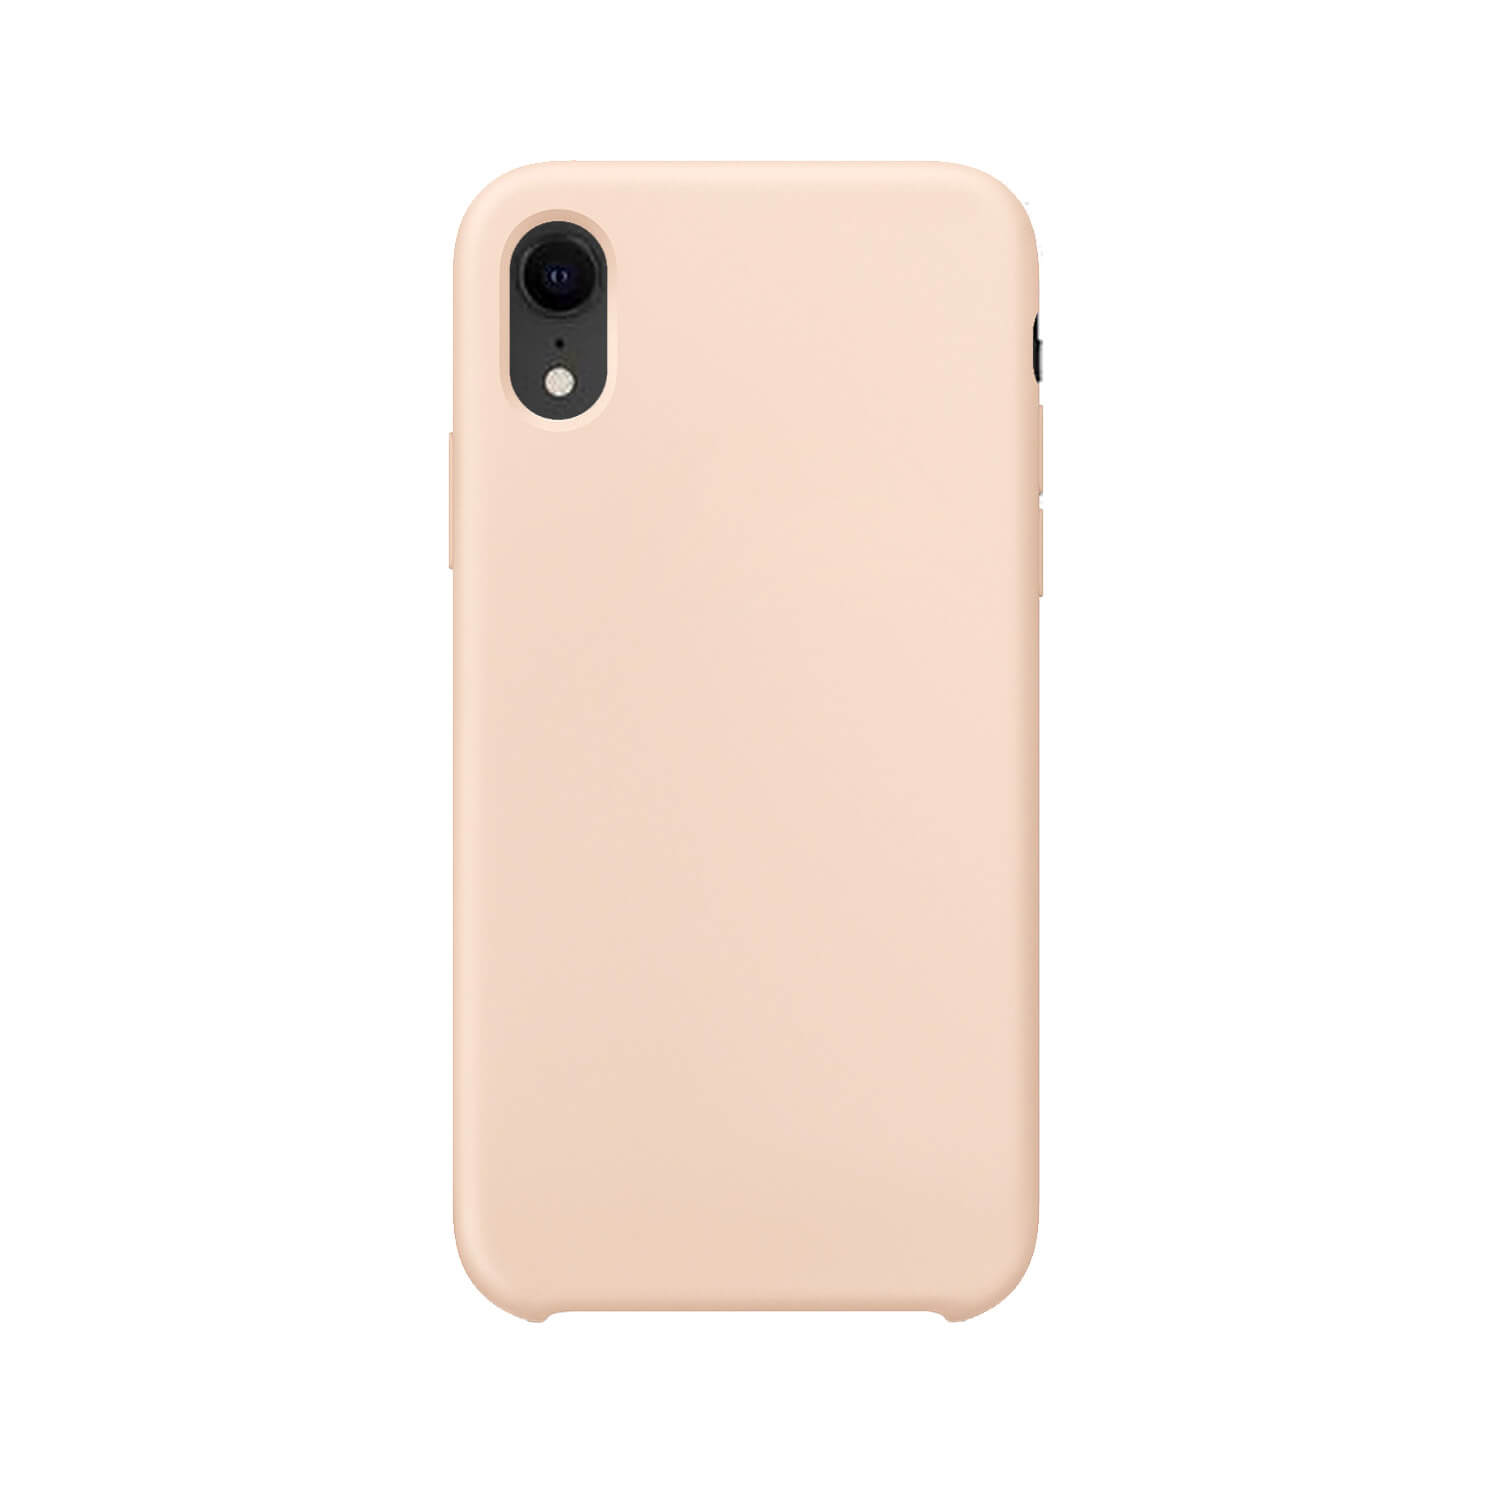 min De vreemdeling B.C. iPhone Xr hoesje siliconen - Pink Sand - Telefoonglaasje